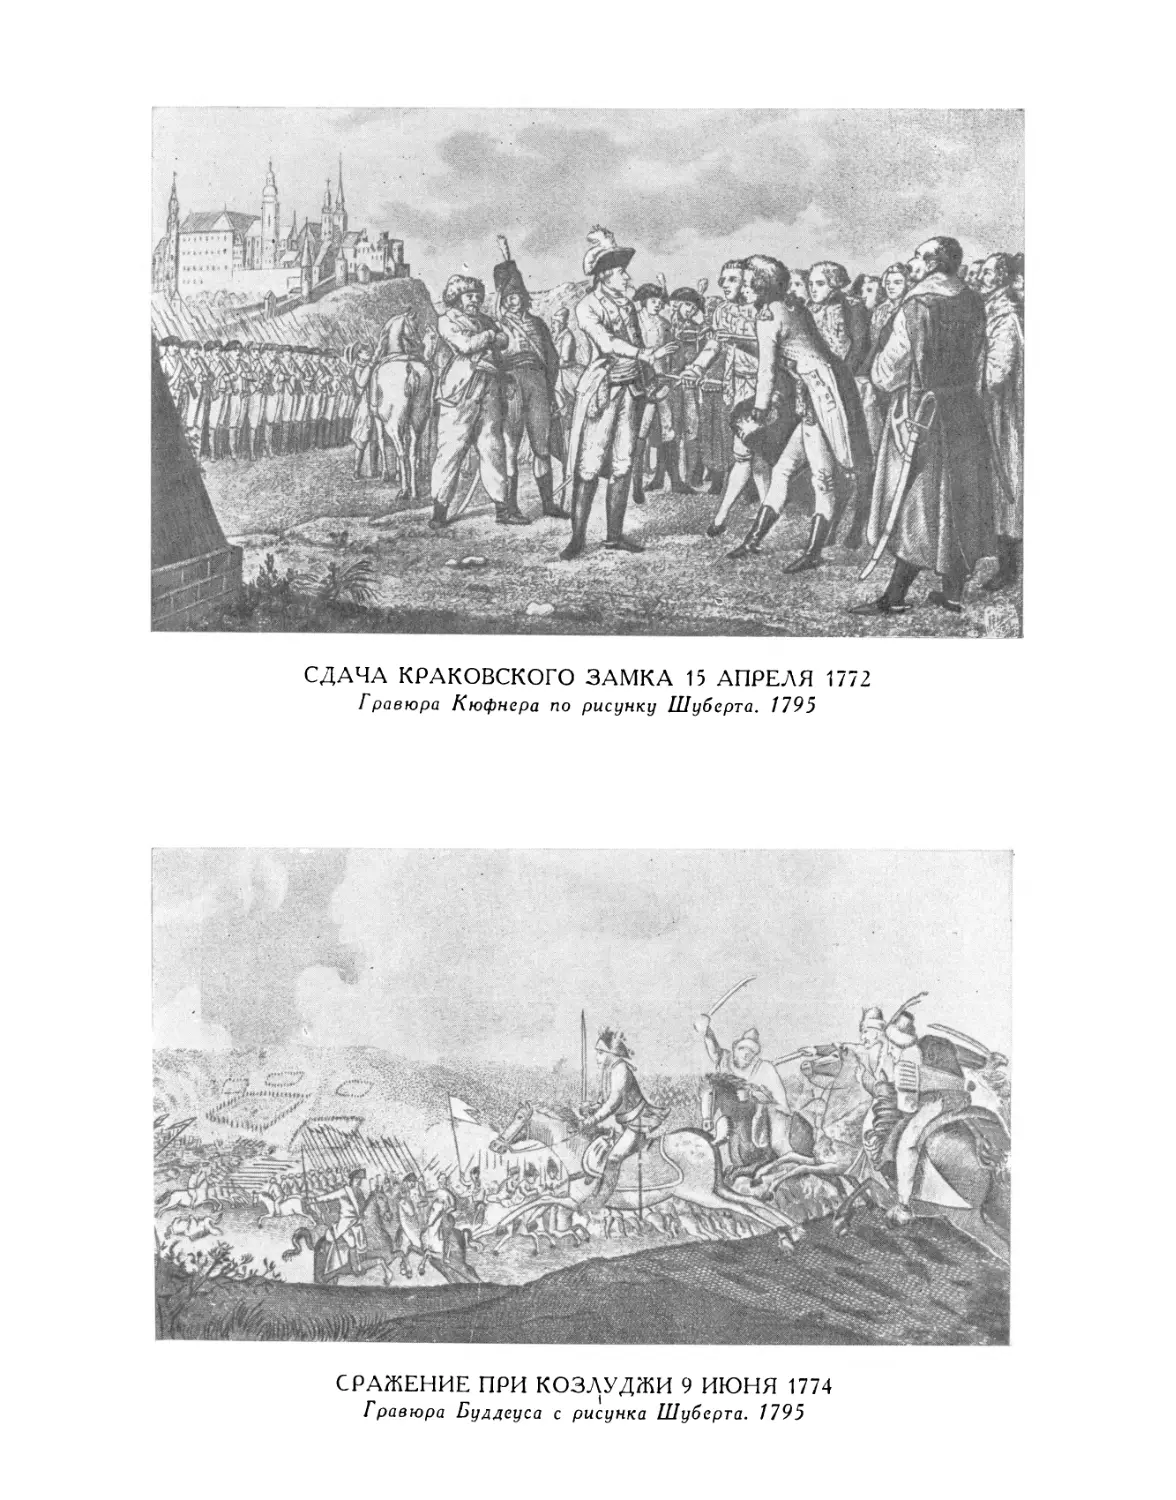 Сдача Краковского замка 15 апреля 1772 г. Гравюра Кюфнера по рисунку Шуберта. 1795
Сражение при Козлуджи 9 июня 1774 г. Гравюра Буддеуса с рисунка Шуберта. 1795